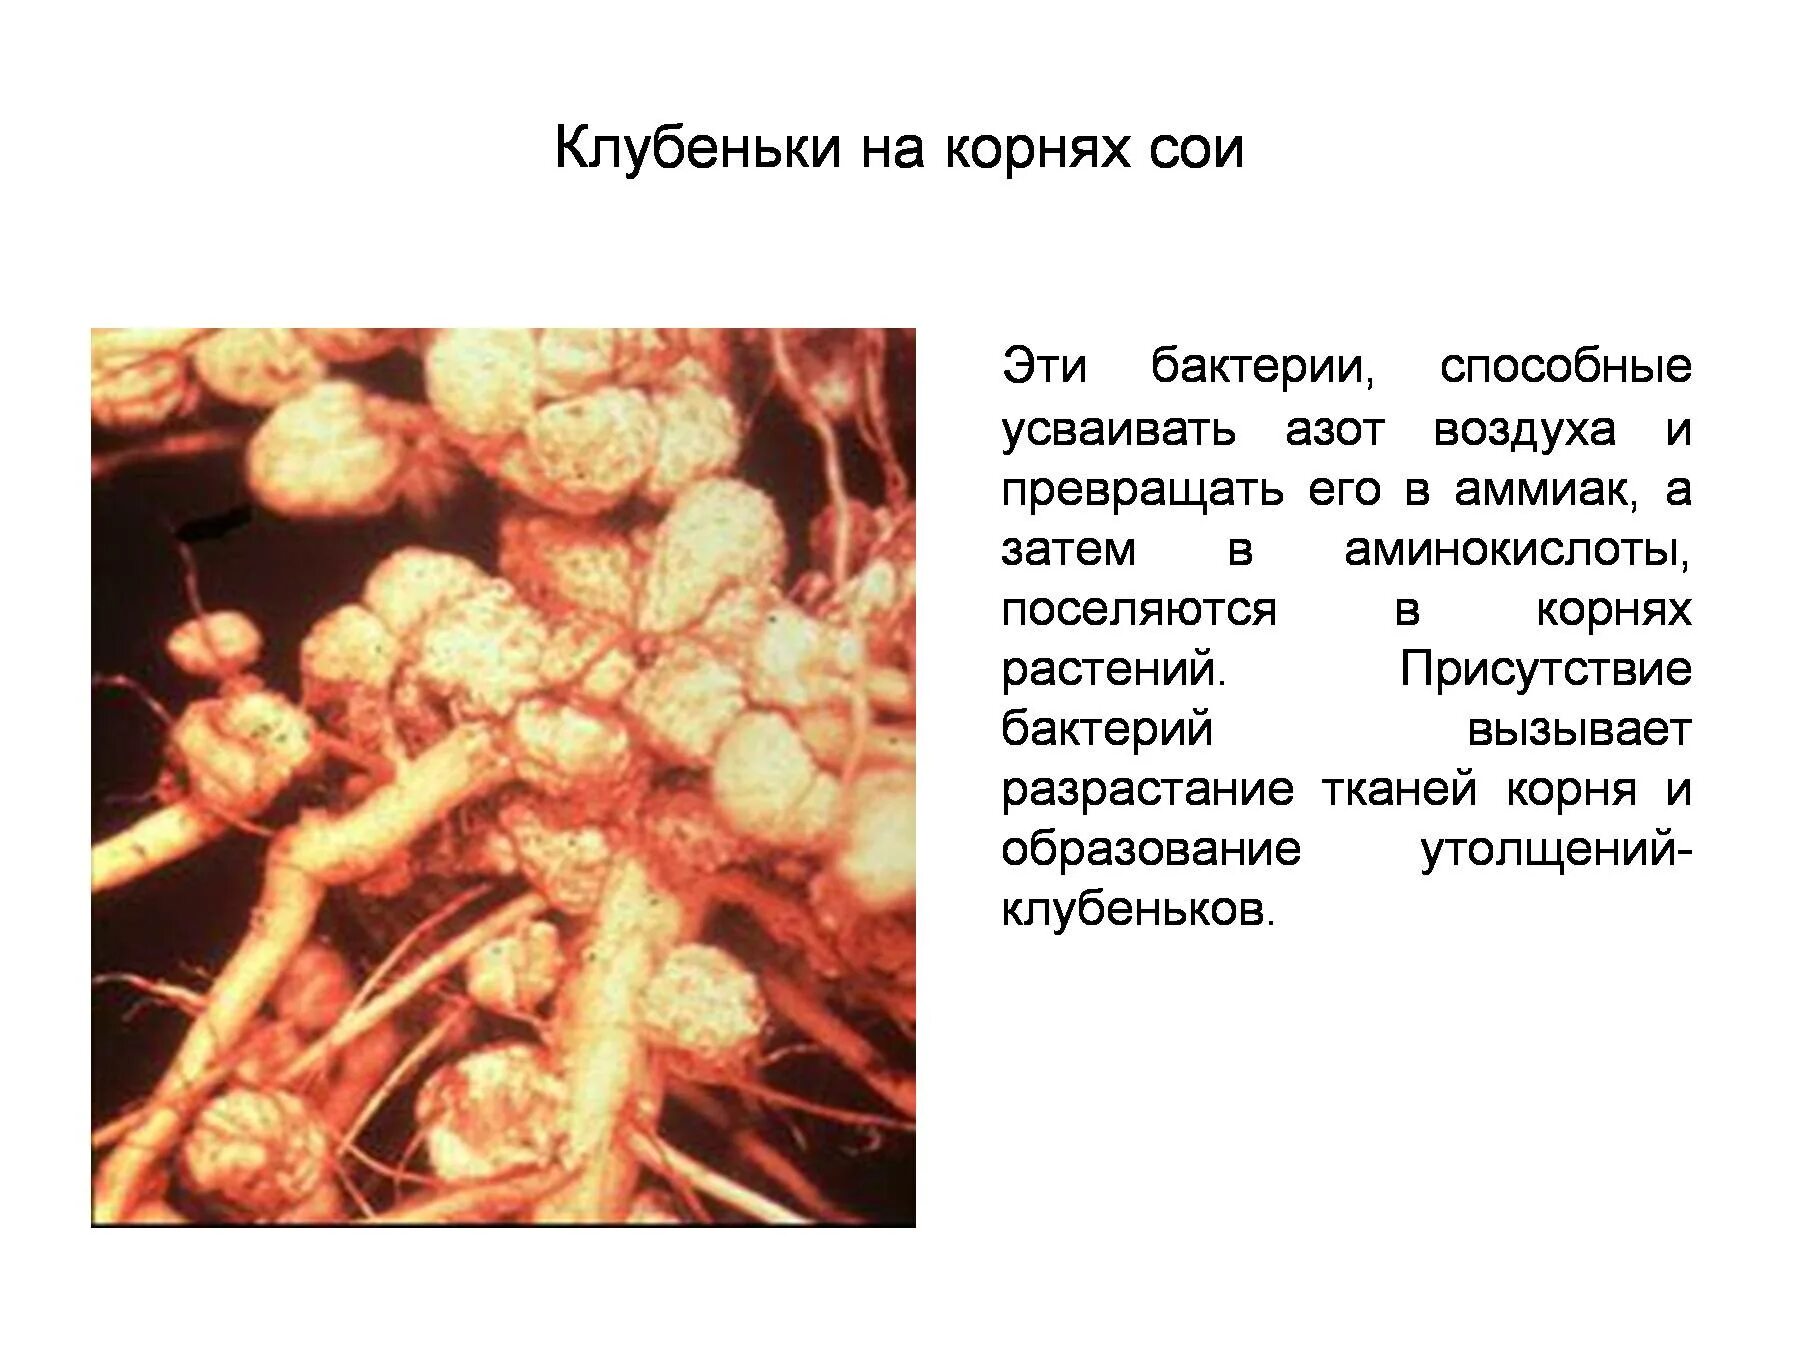 Растения усваивают азот из воздуха. Симбиоз микроорганизмов. Клубеньки на корнях. Клубеньки сои. Микроорганизмы образующие клубеньки на корнях сои.